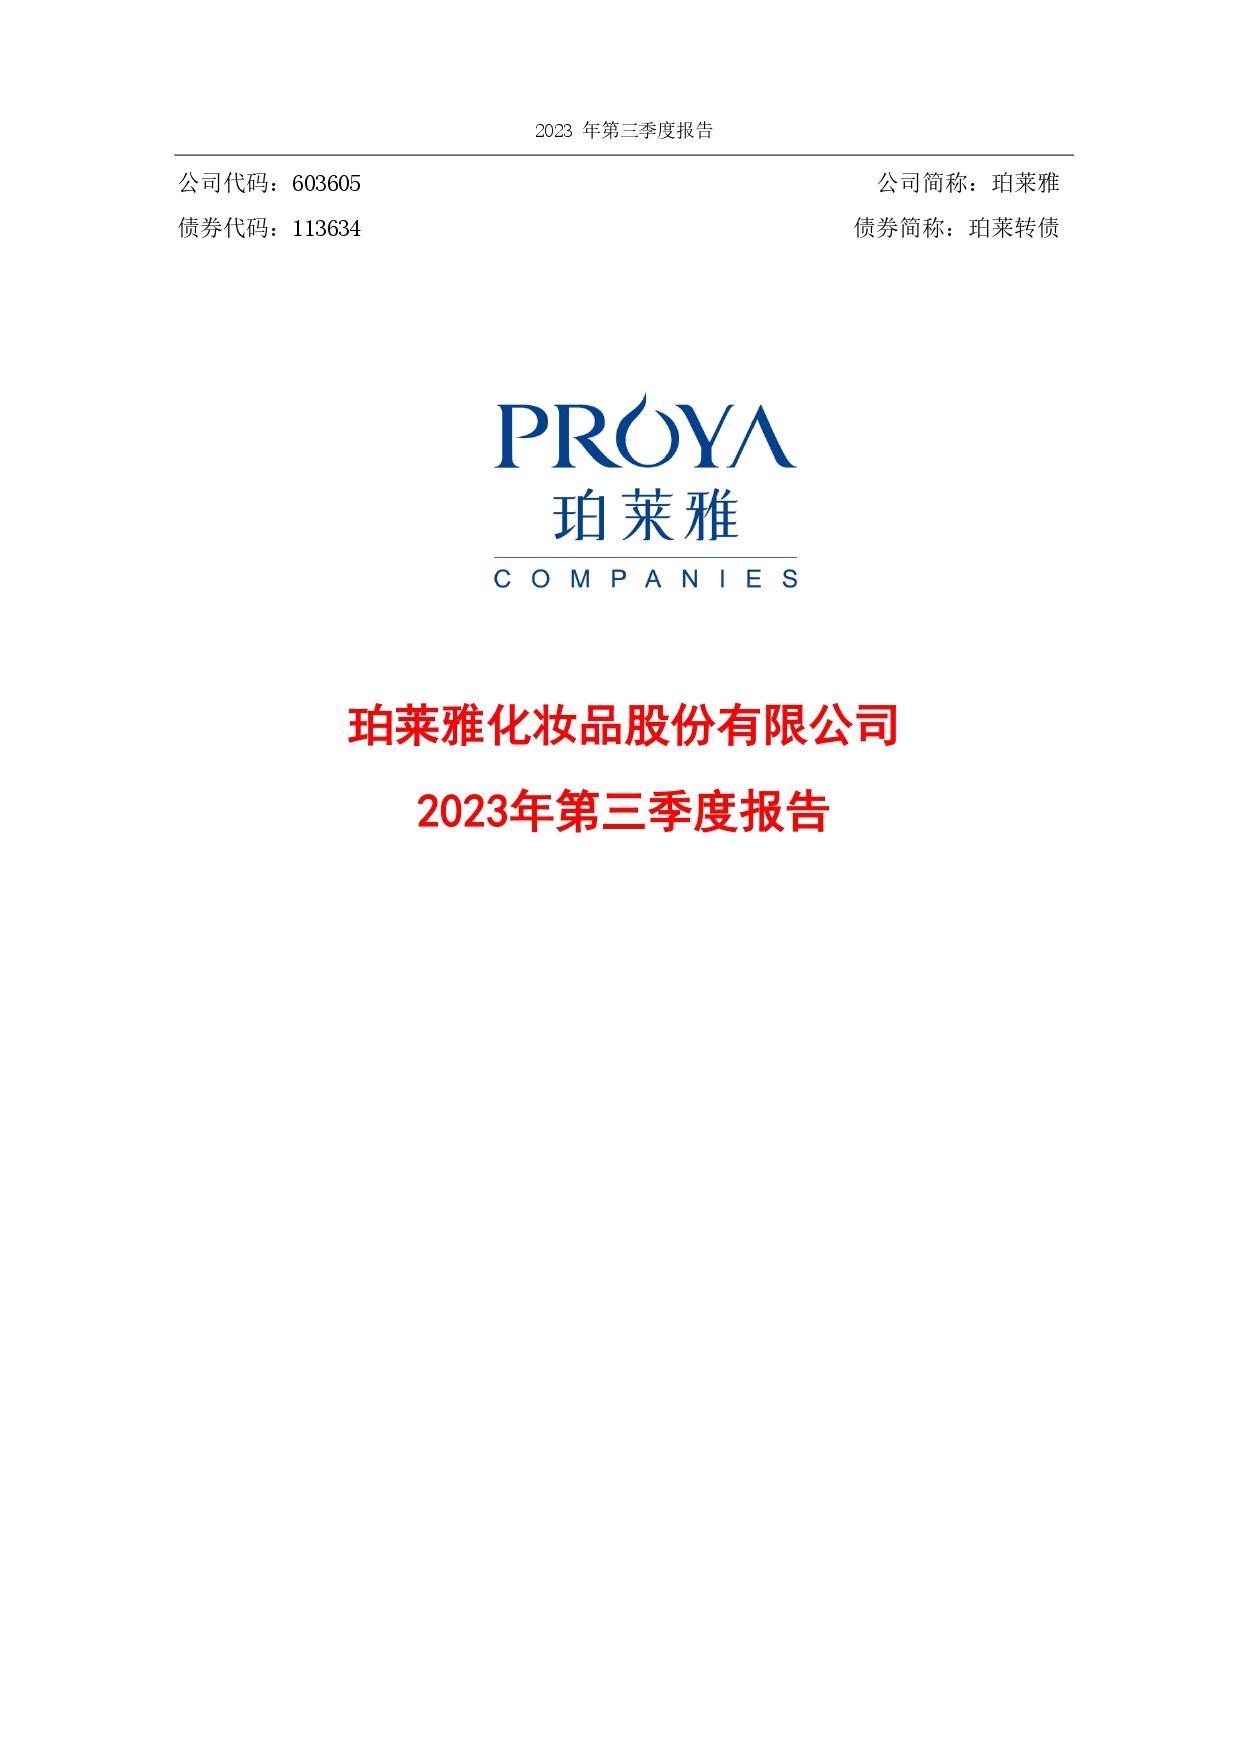 2023年第三季度报告封面_page-0001.jpg